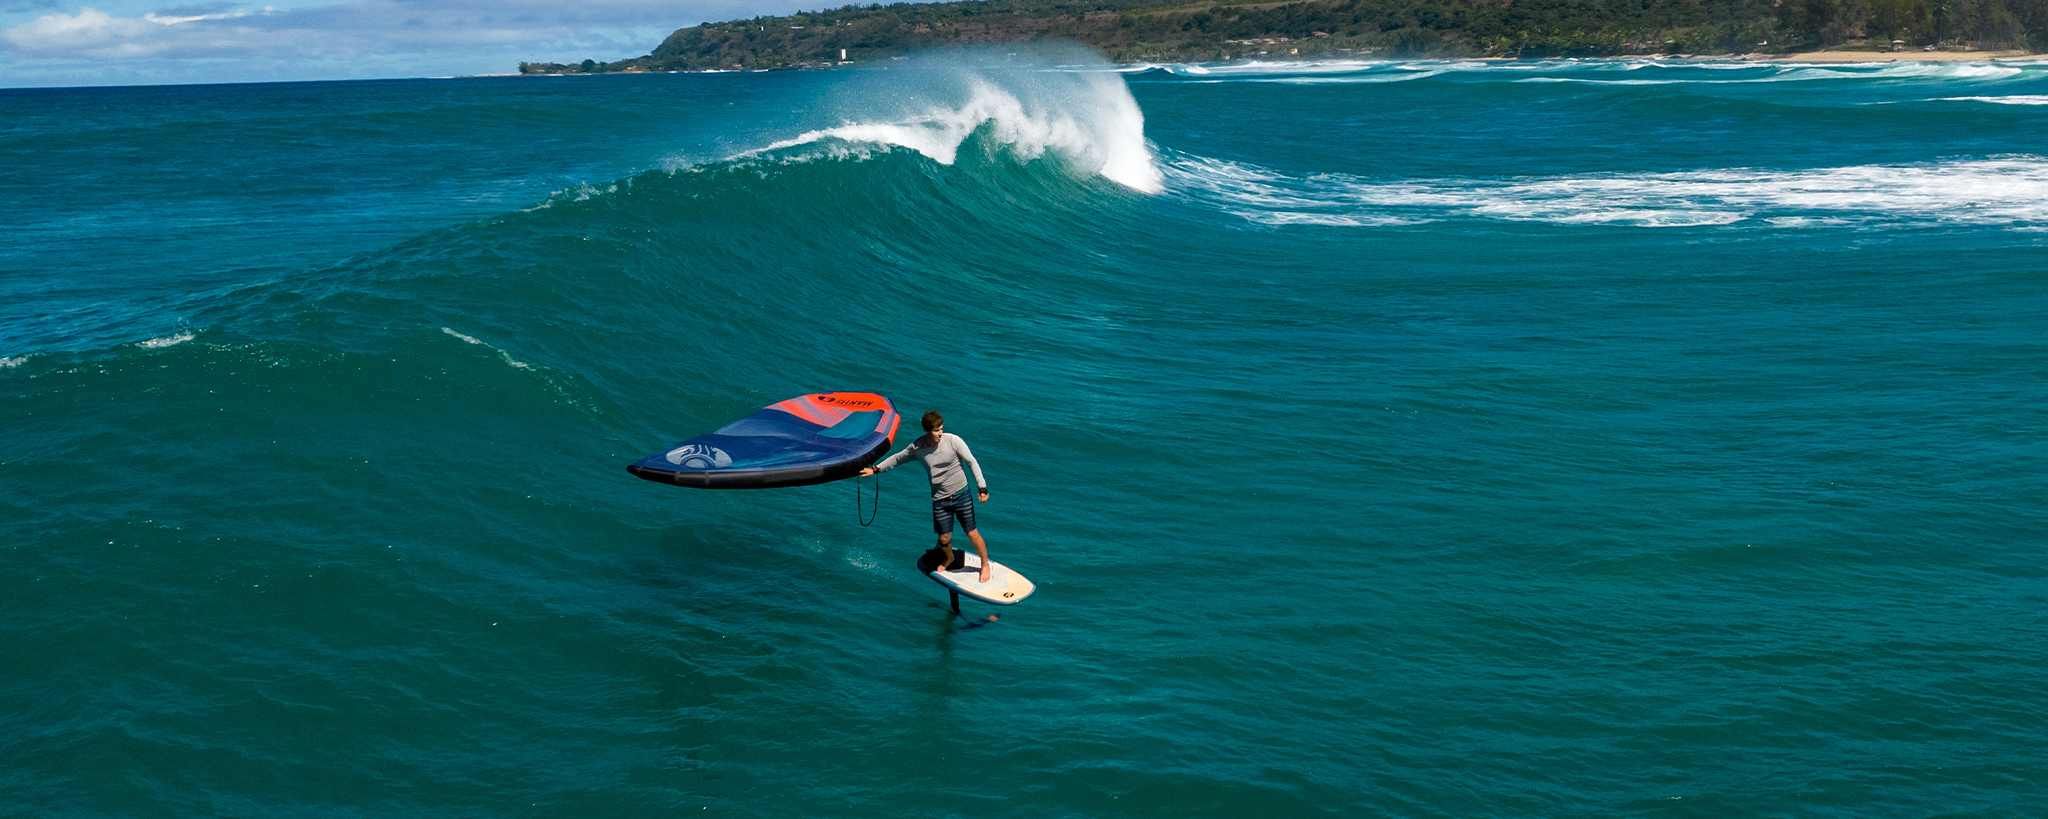 Rider surfeando con Cabrinha Mantis V2